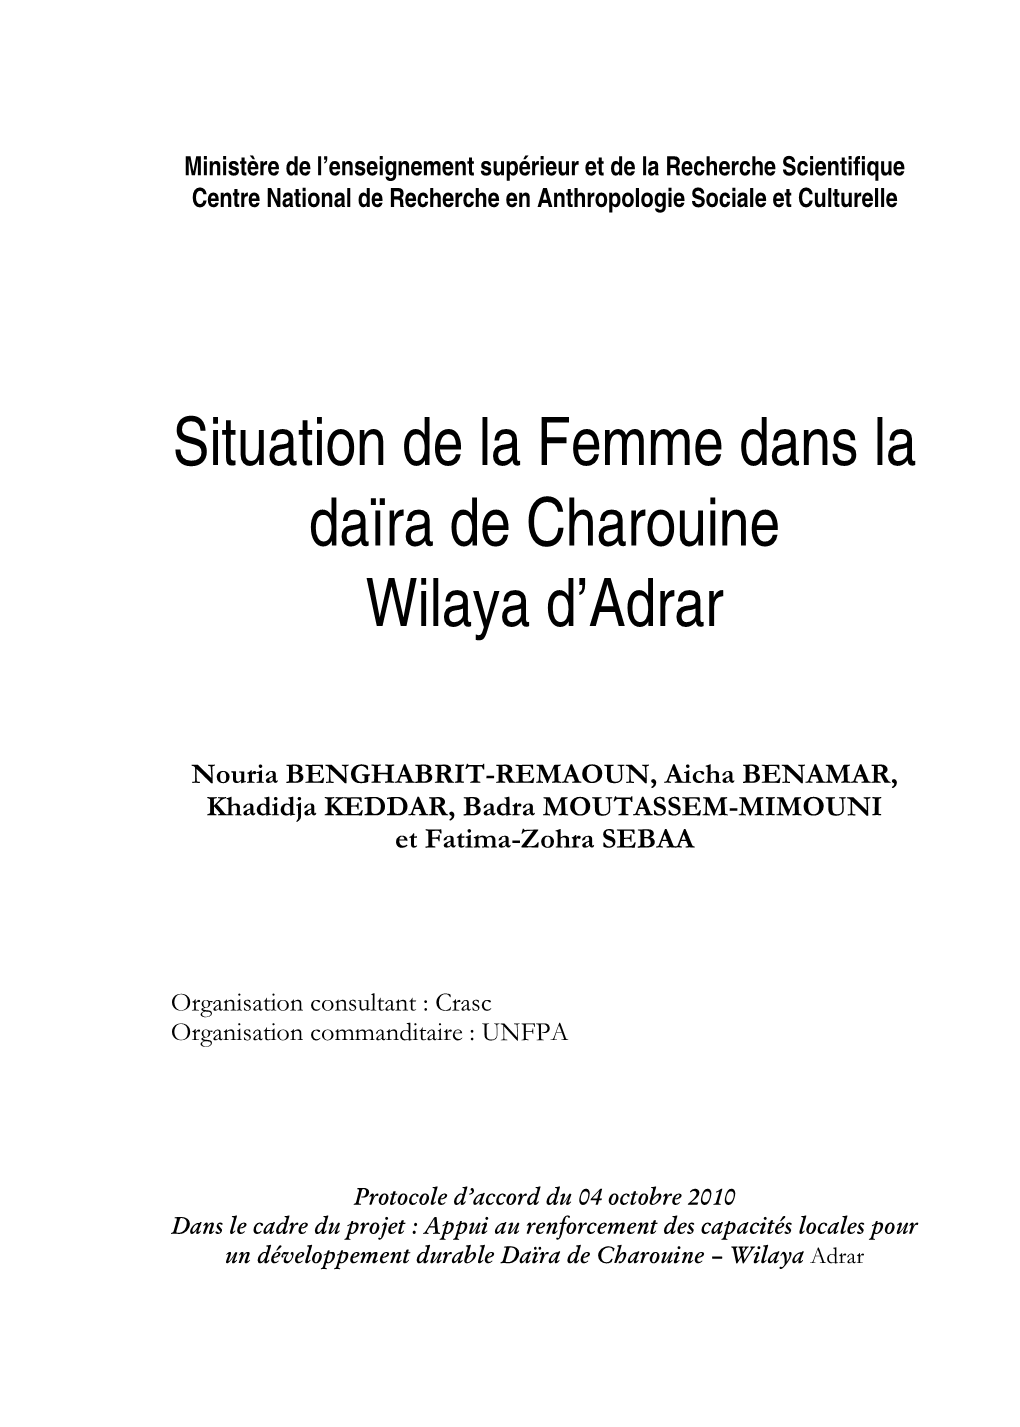 Situation De La Femme Dans La Daïra De Charouine Wilaya D’Adrar